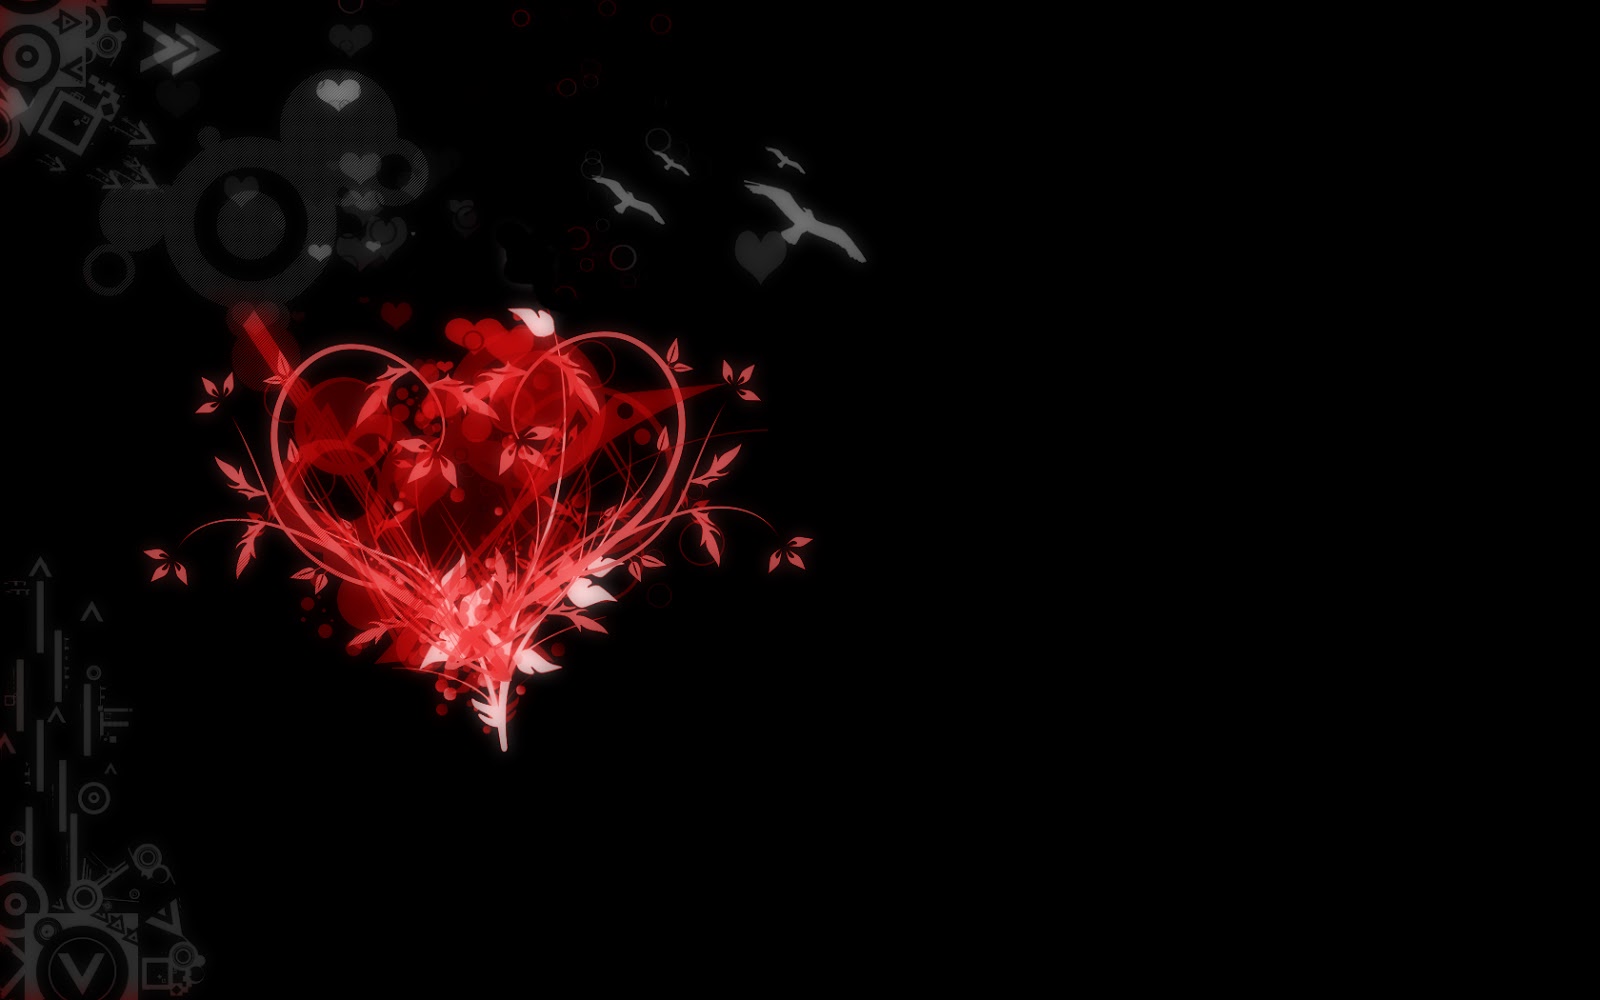 Tải hình nền trái tim 3D tình yêu đẹp ấn tượng nhất hiện nay